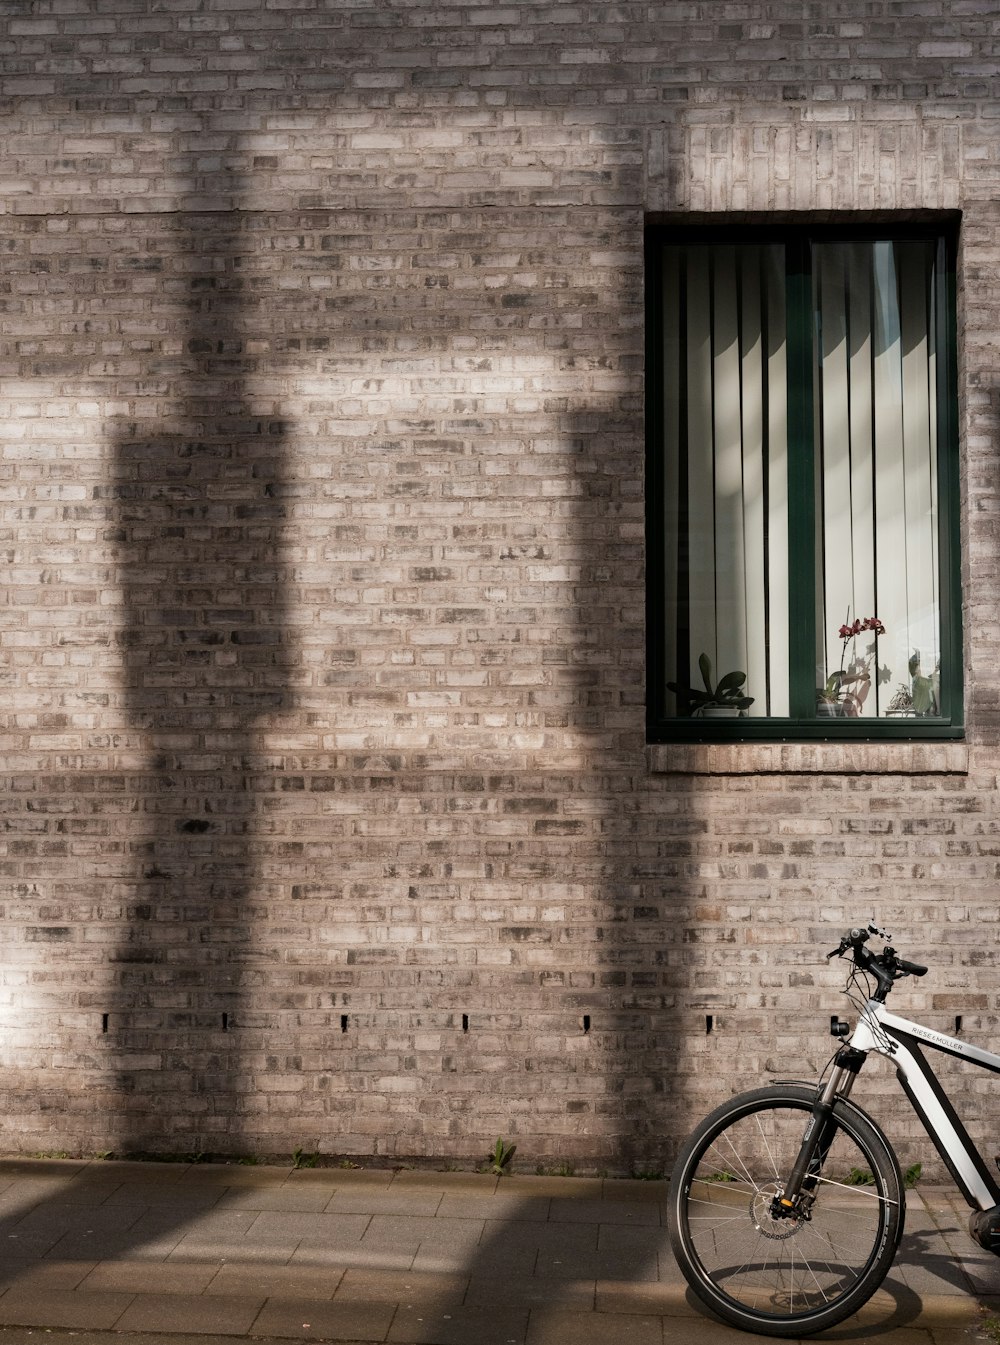 Bicicletta nera parcheggiata accanto al muro di mattoni marroni